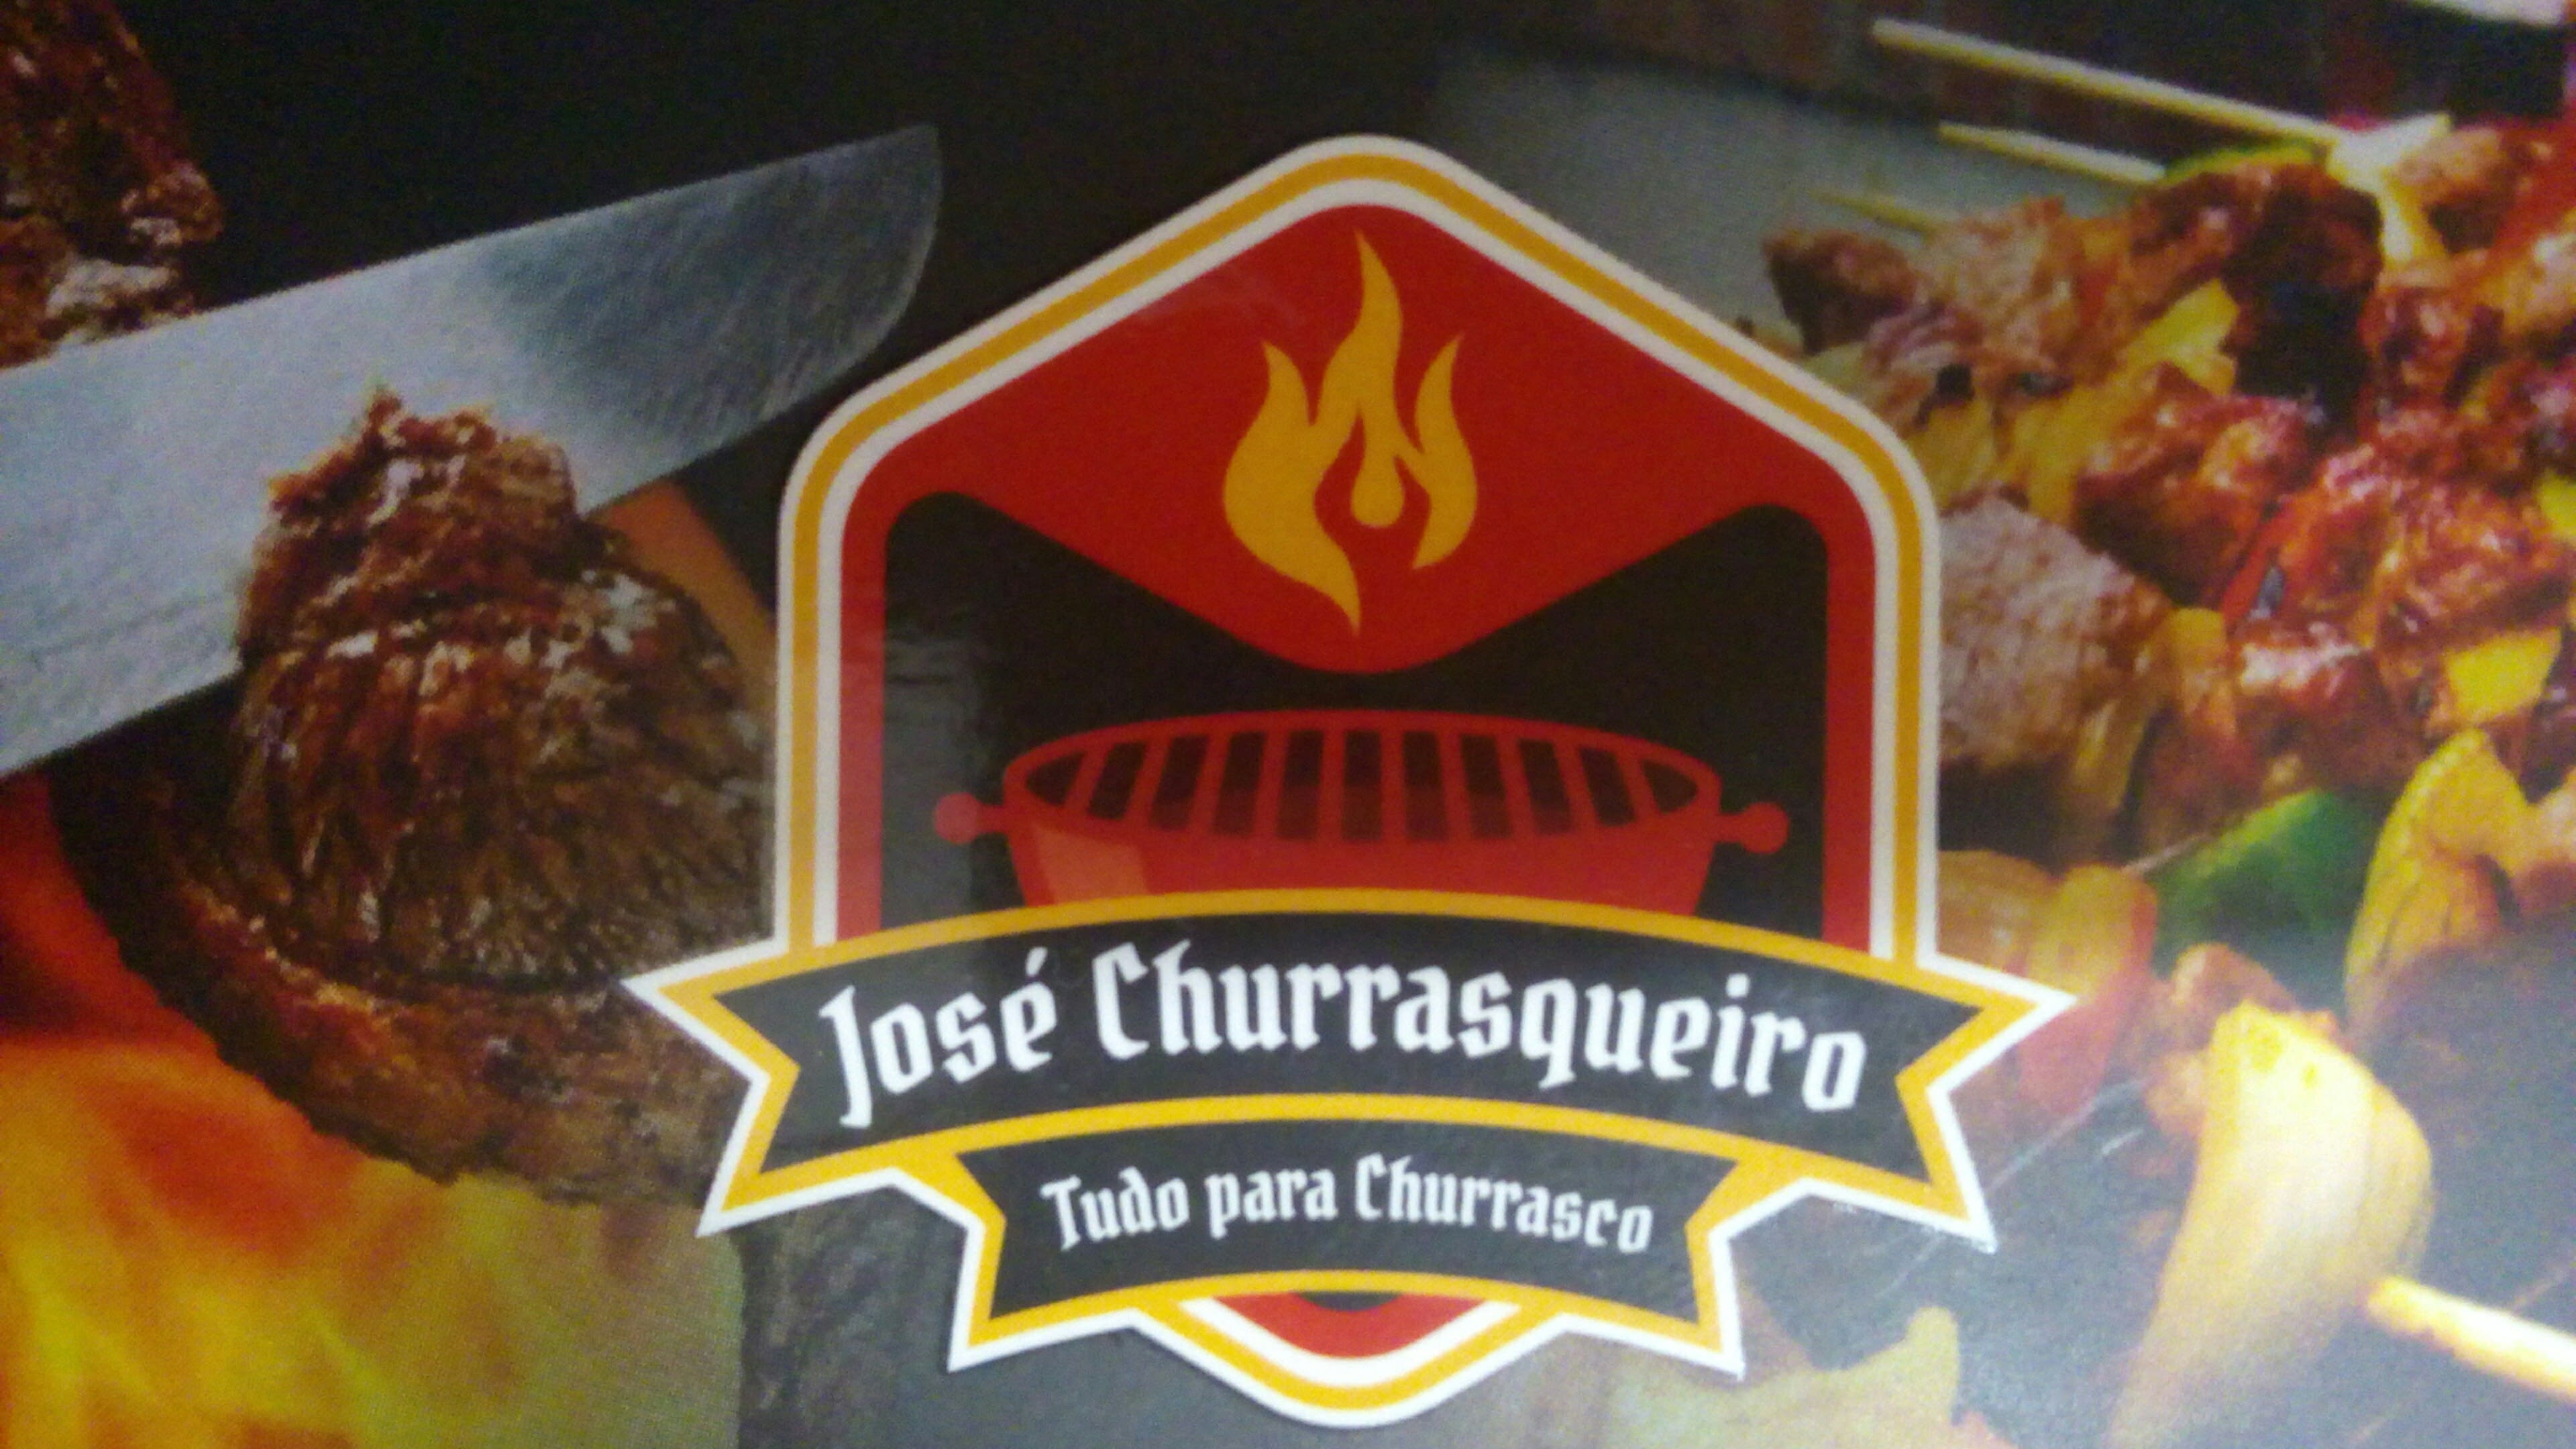 Jose Churrasqueiro